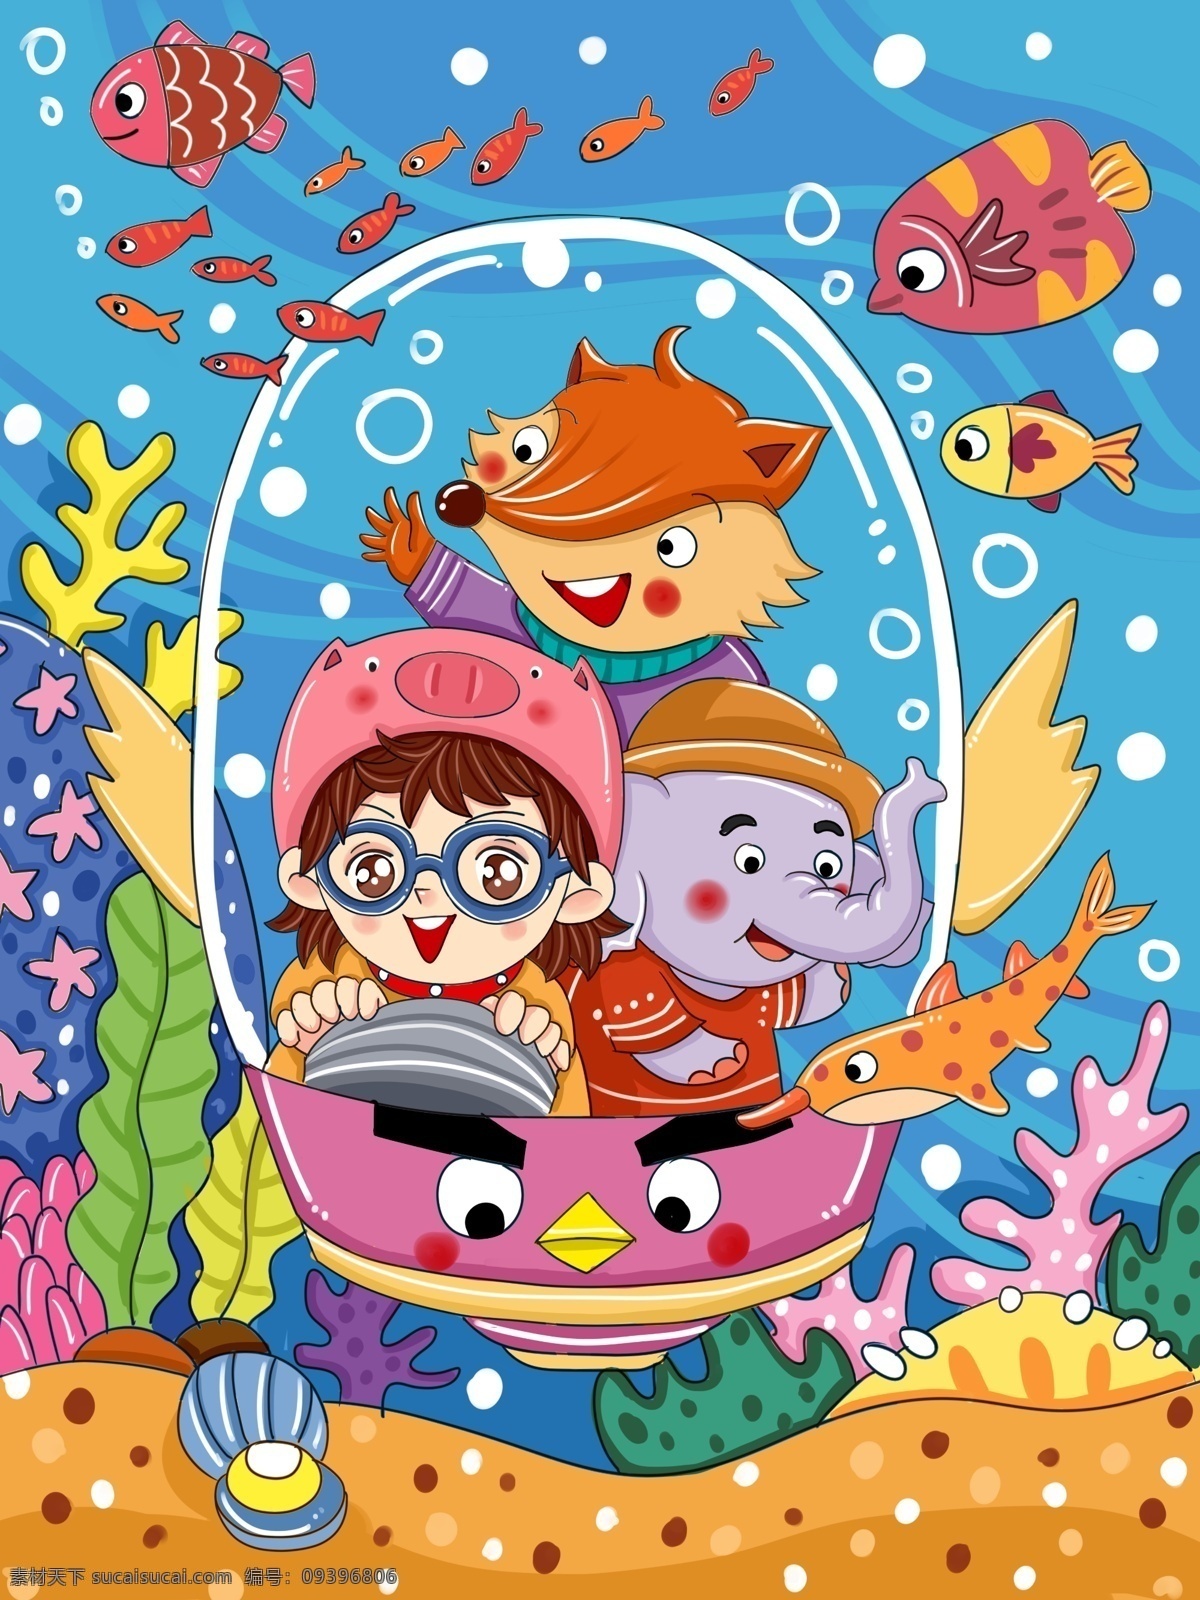 原创 卡通 世界 海洋 日 海底 大 冒险 儿童 插画 世界海洋日 海洋日 海底世界 儿童插画 微博 微信